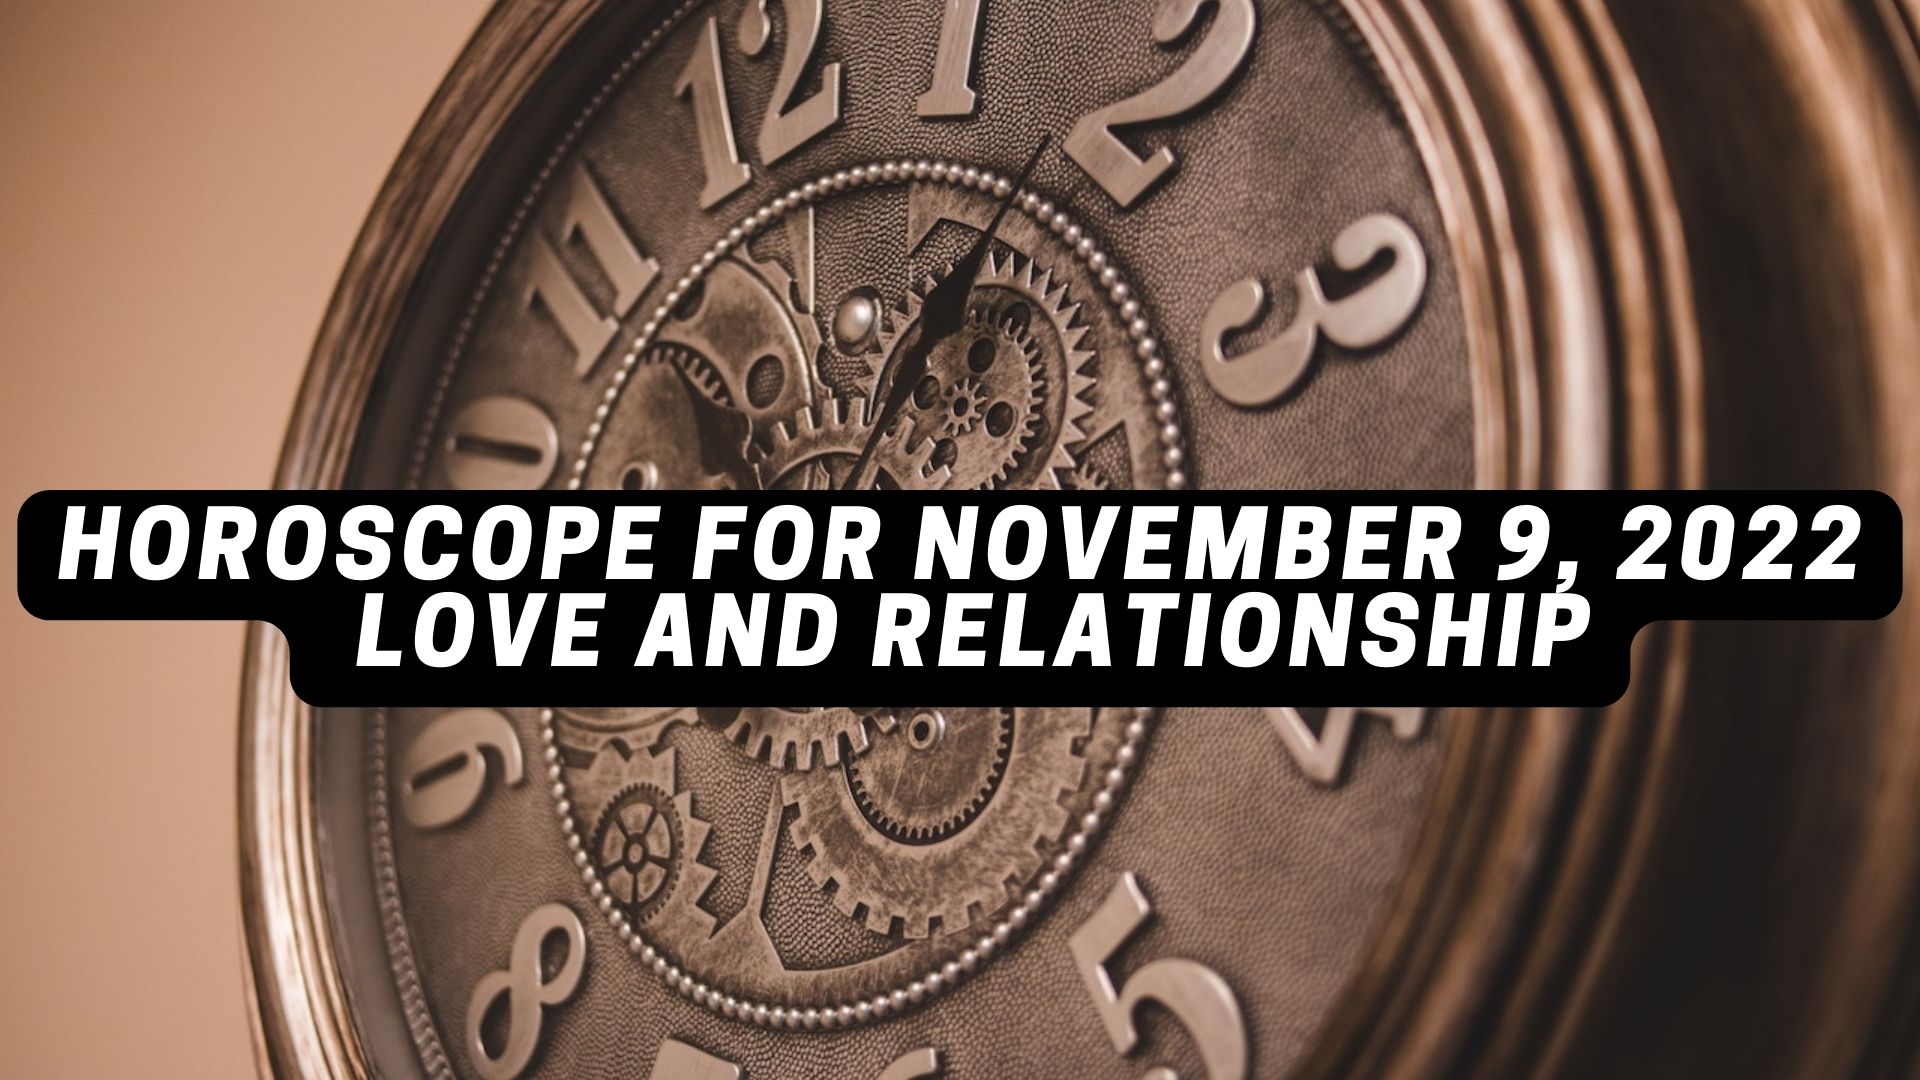 Horoscope For November 9, 2022 - Love And Relationship